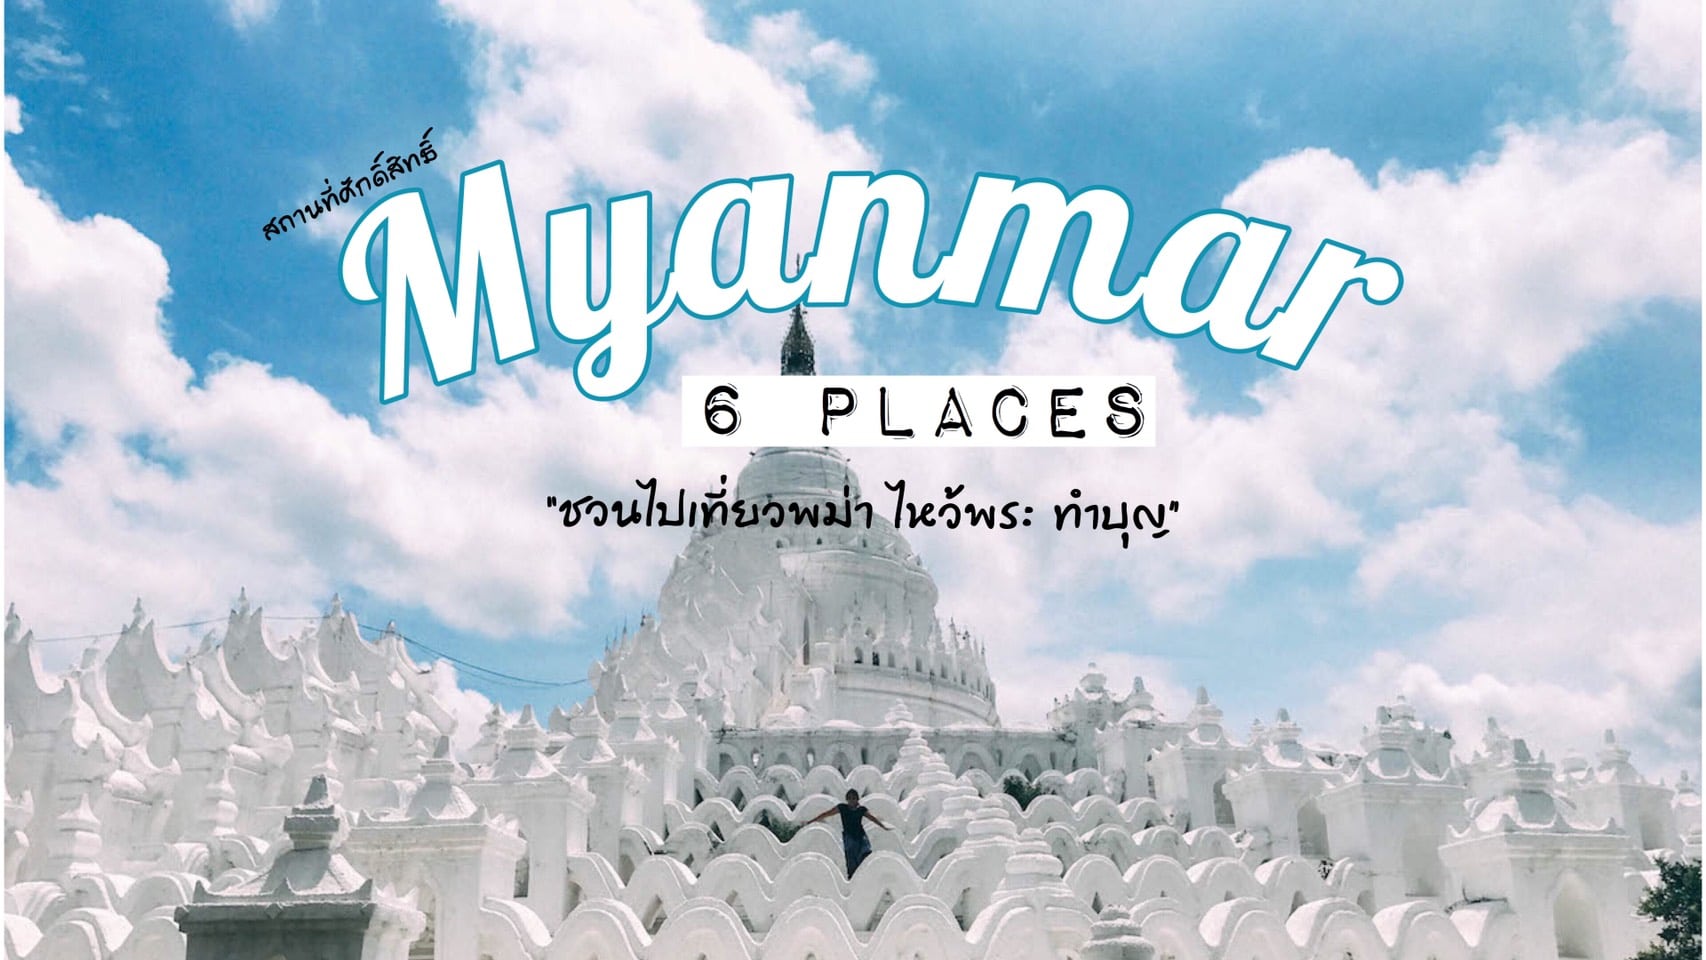 ทัวร์พม่า – ชวนไปเที่ยวไหว้พระทำบุญ กับ 6 สถานที่ของพม่า ที่ถูกร่ำลือว่าศักดิ์สิทธิ์มาก